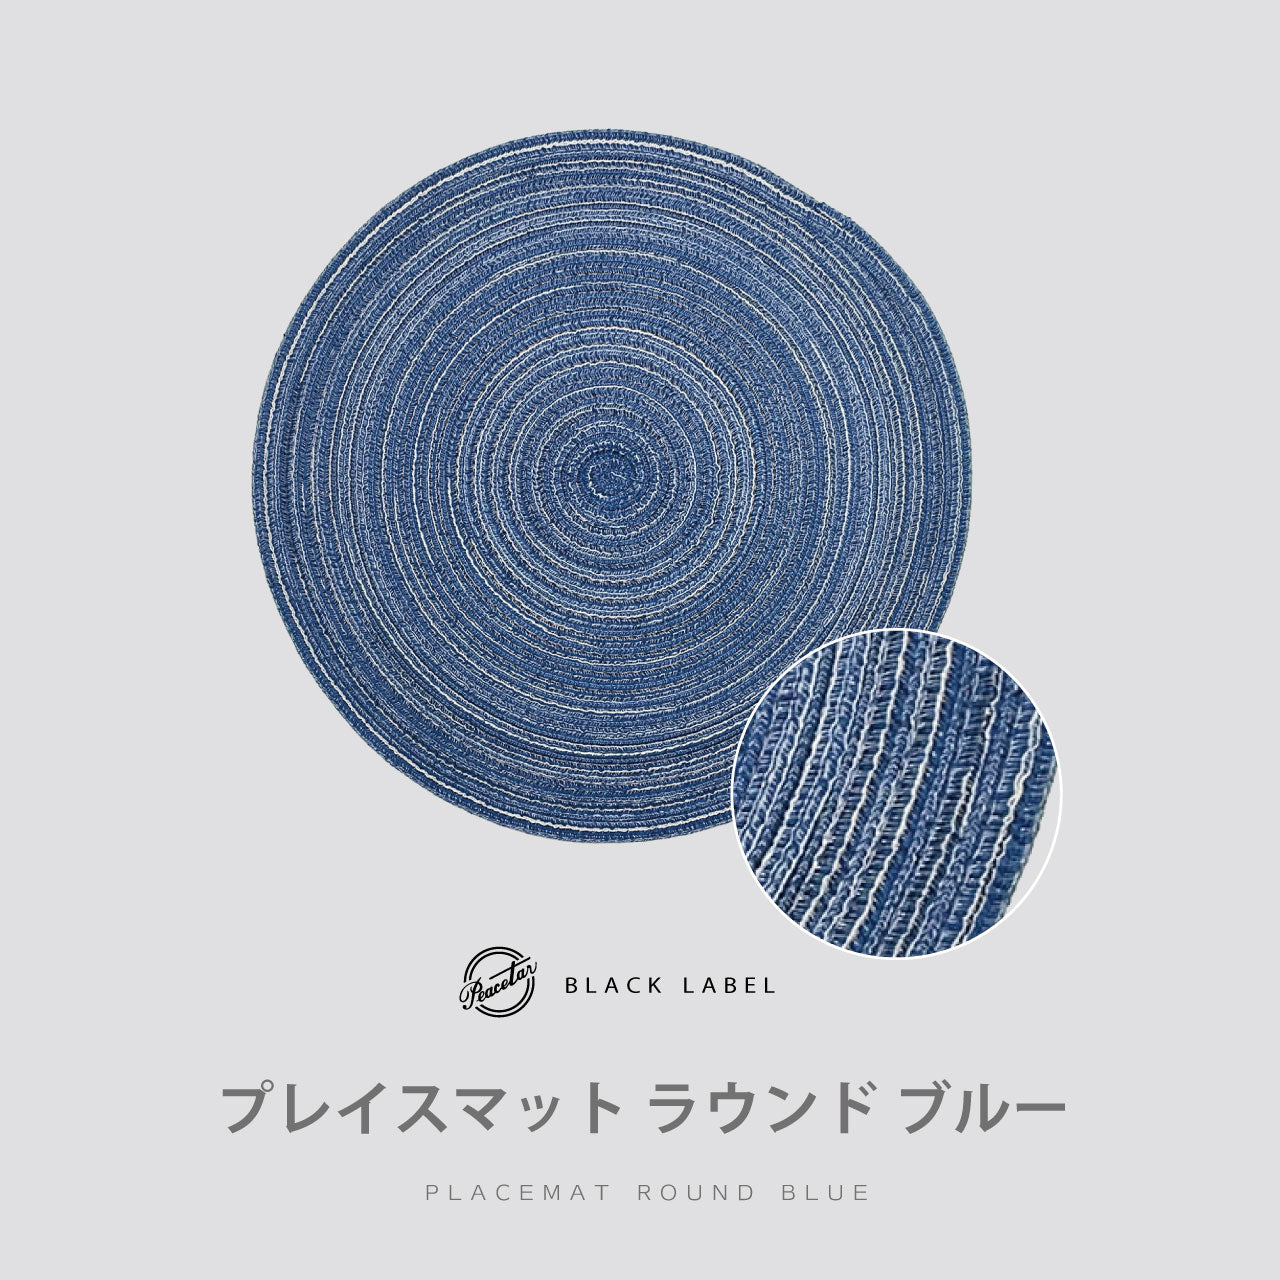 【完売】プレイスマット ラウンド ブルー  PeacetarBlackLabel ランチョンマット 全5色